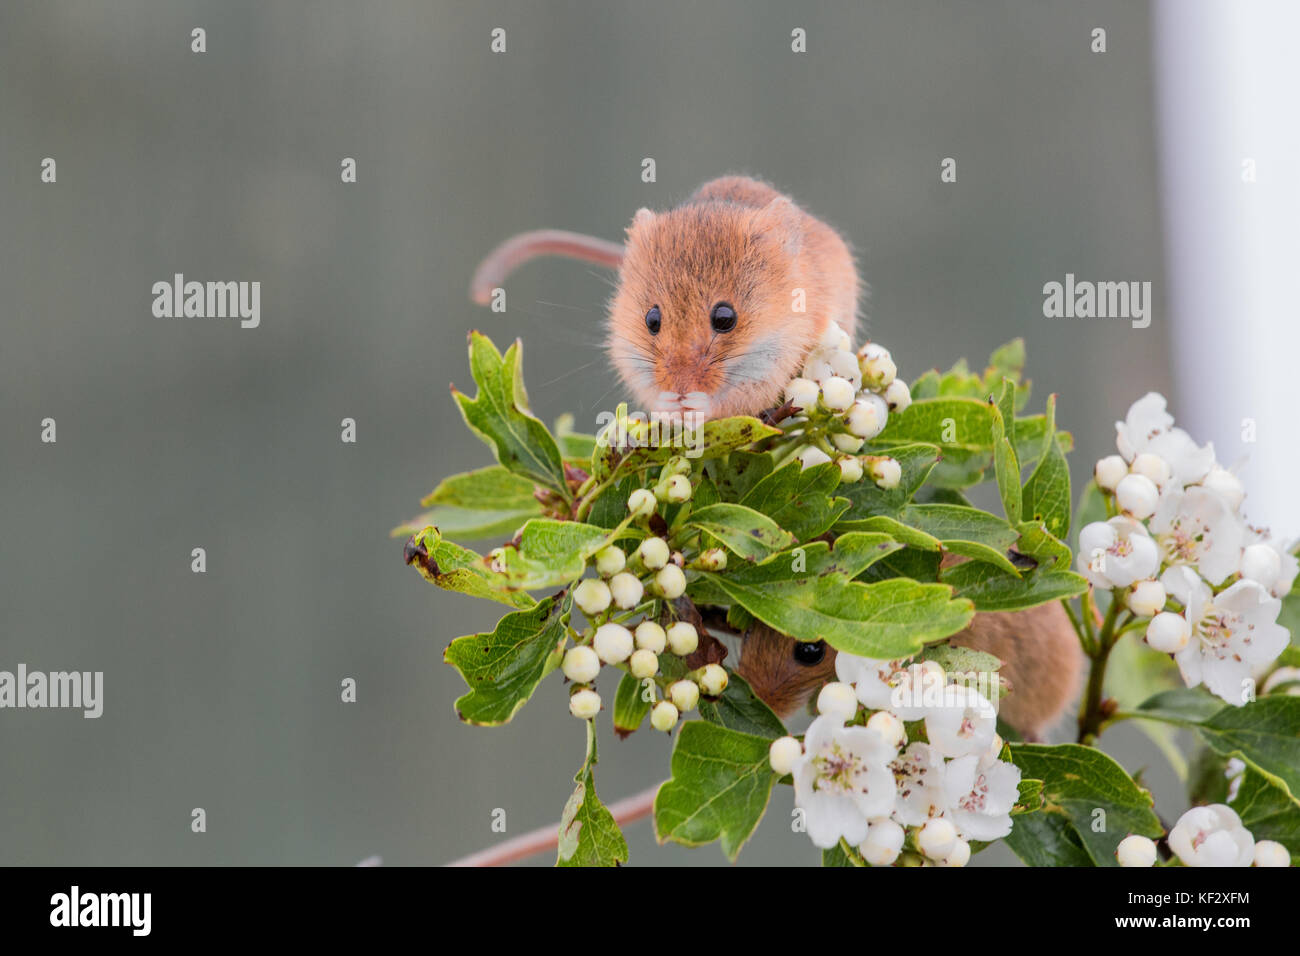 Cute souris des champs cachés dans des fleurs Banque D'Images